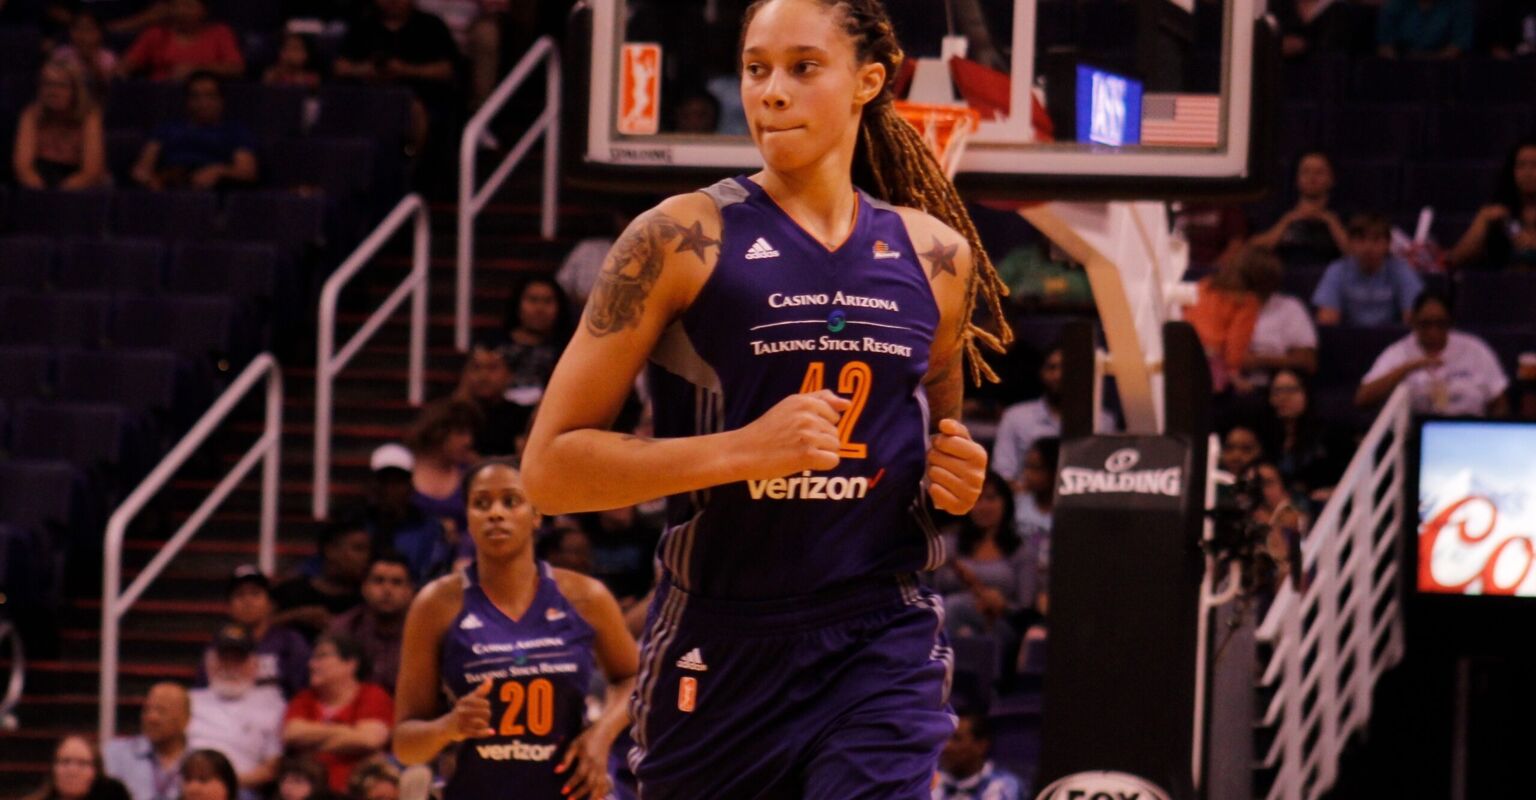 Brittney Griner WNBA Return to Phoenix Behind-the-Scenes Details